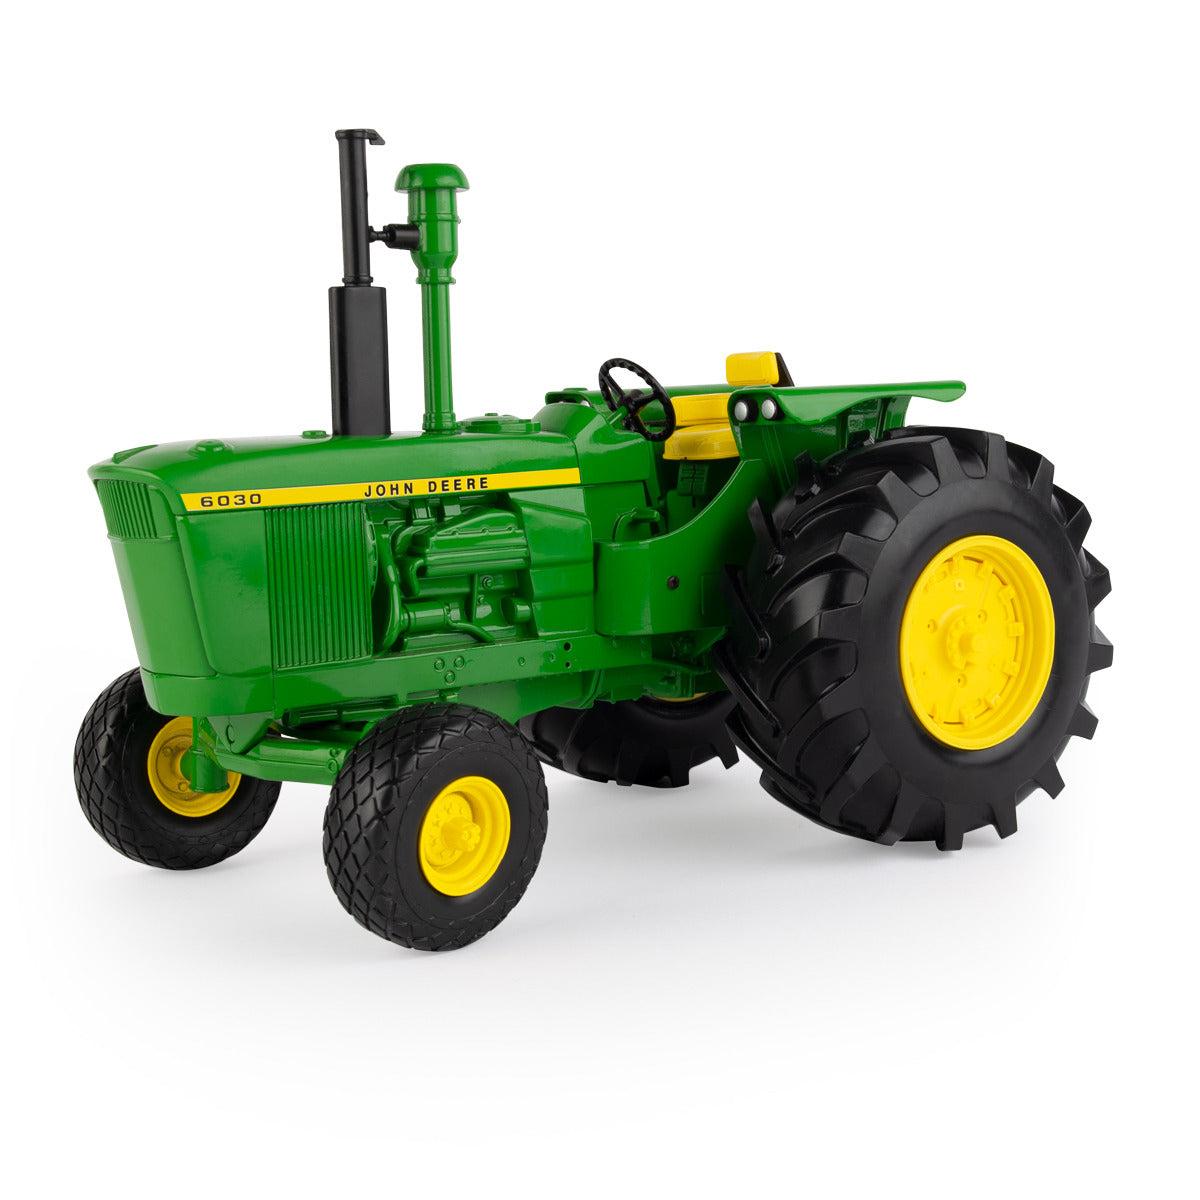 1/16 John Deere 6030 Tractor Toy - LP74517